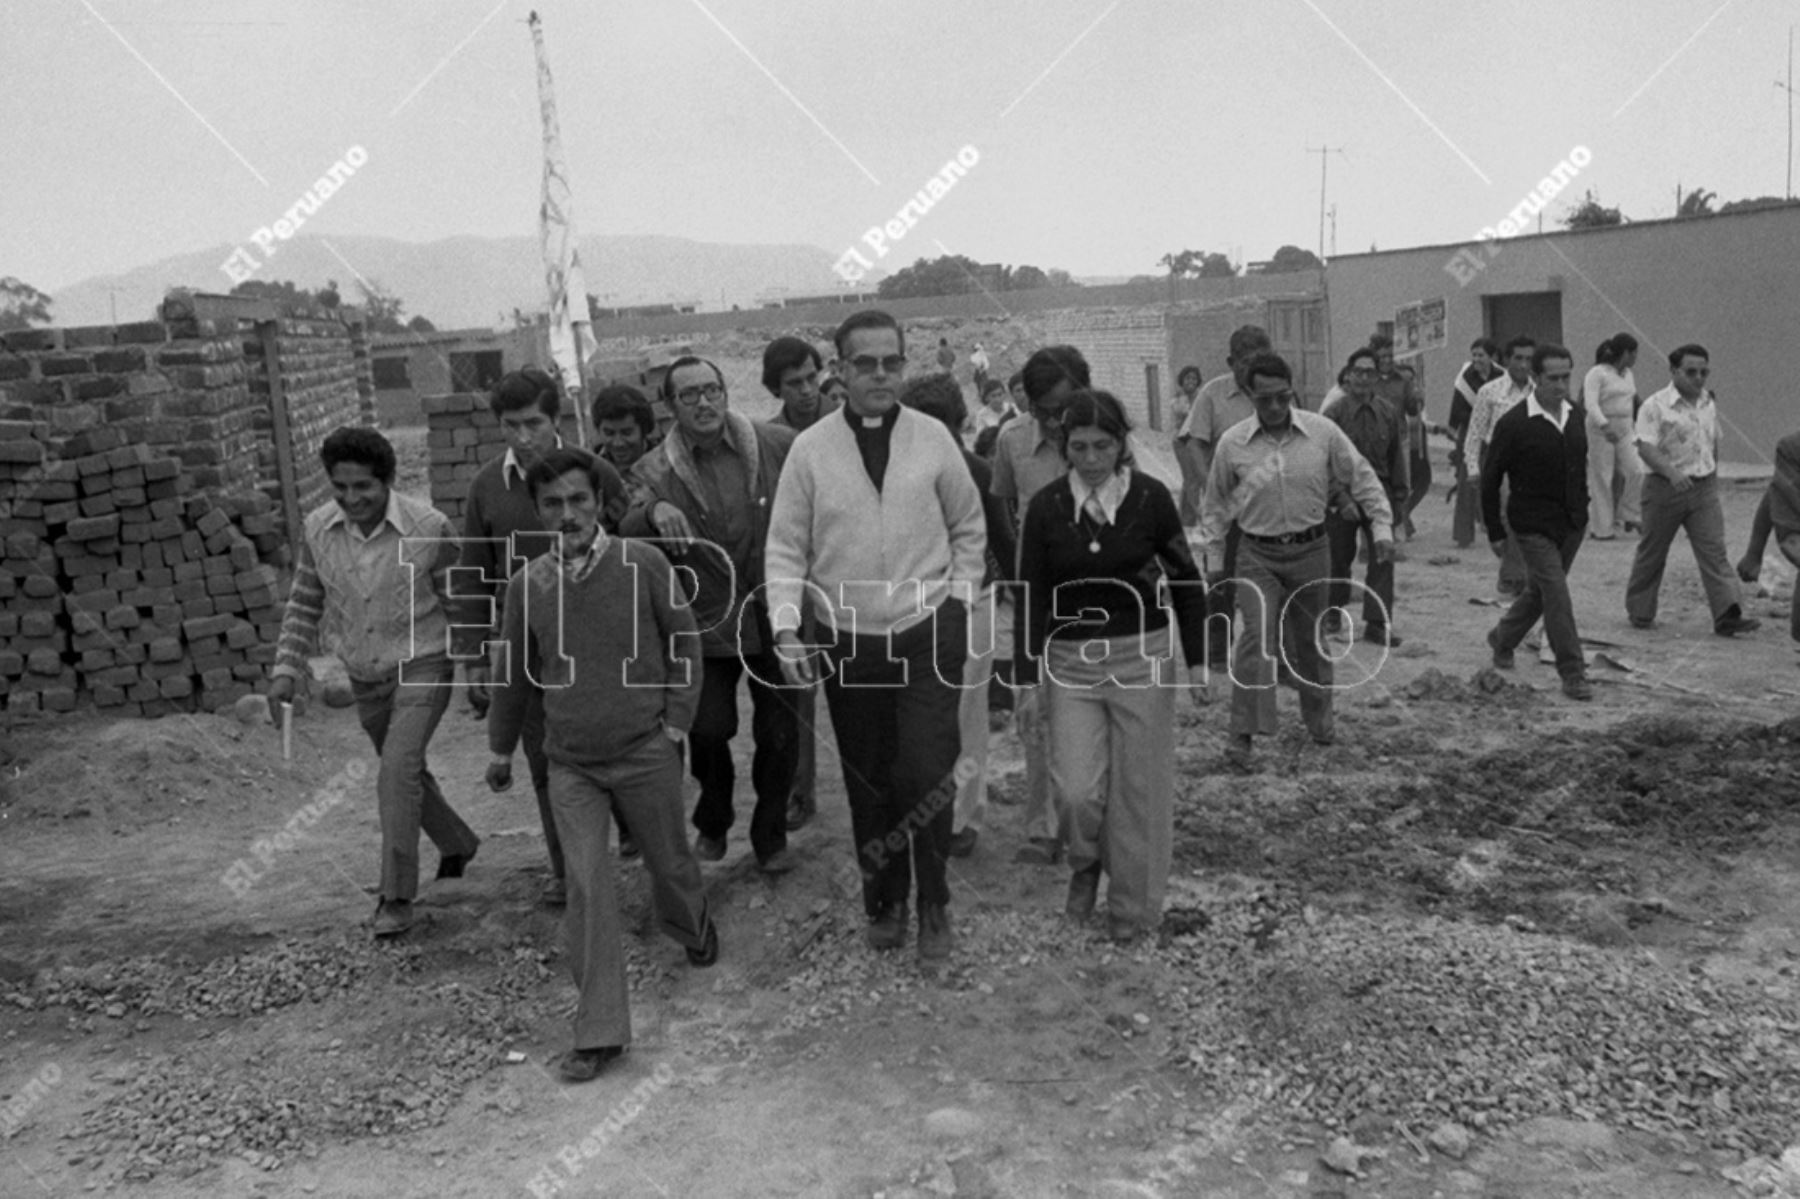 Lima - 23 mayo 1976 / Monseñor Luis Bamberén visita el pueblo joven Parque Bajo en Surco.  Foto: Archivo Histórico de El Peruano / Leoncio Mariscal